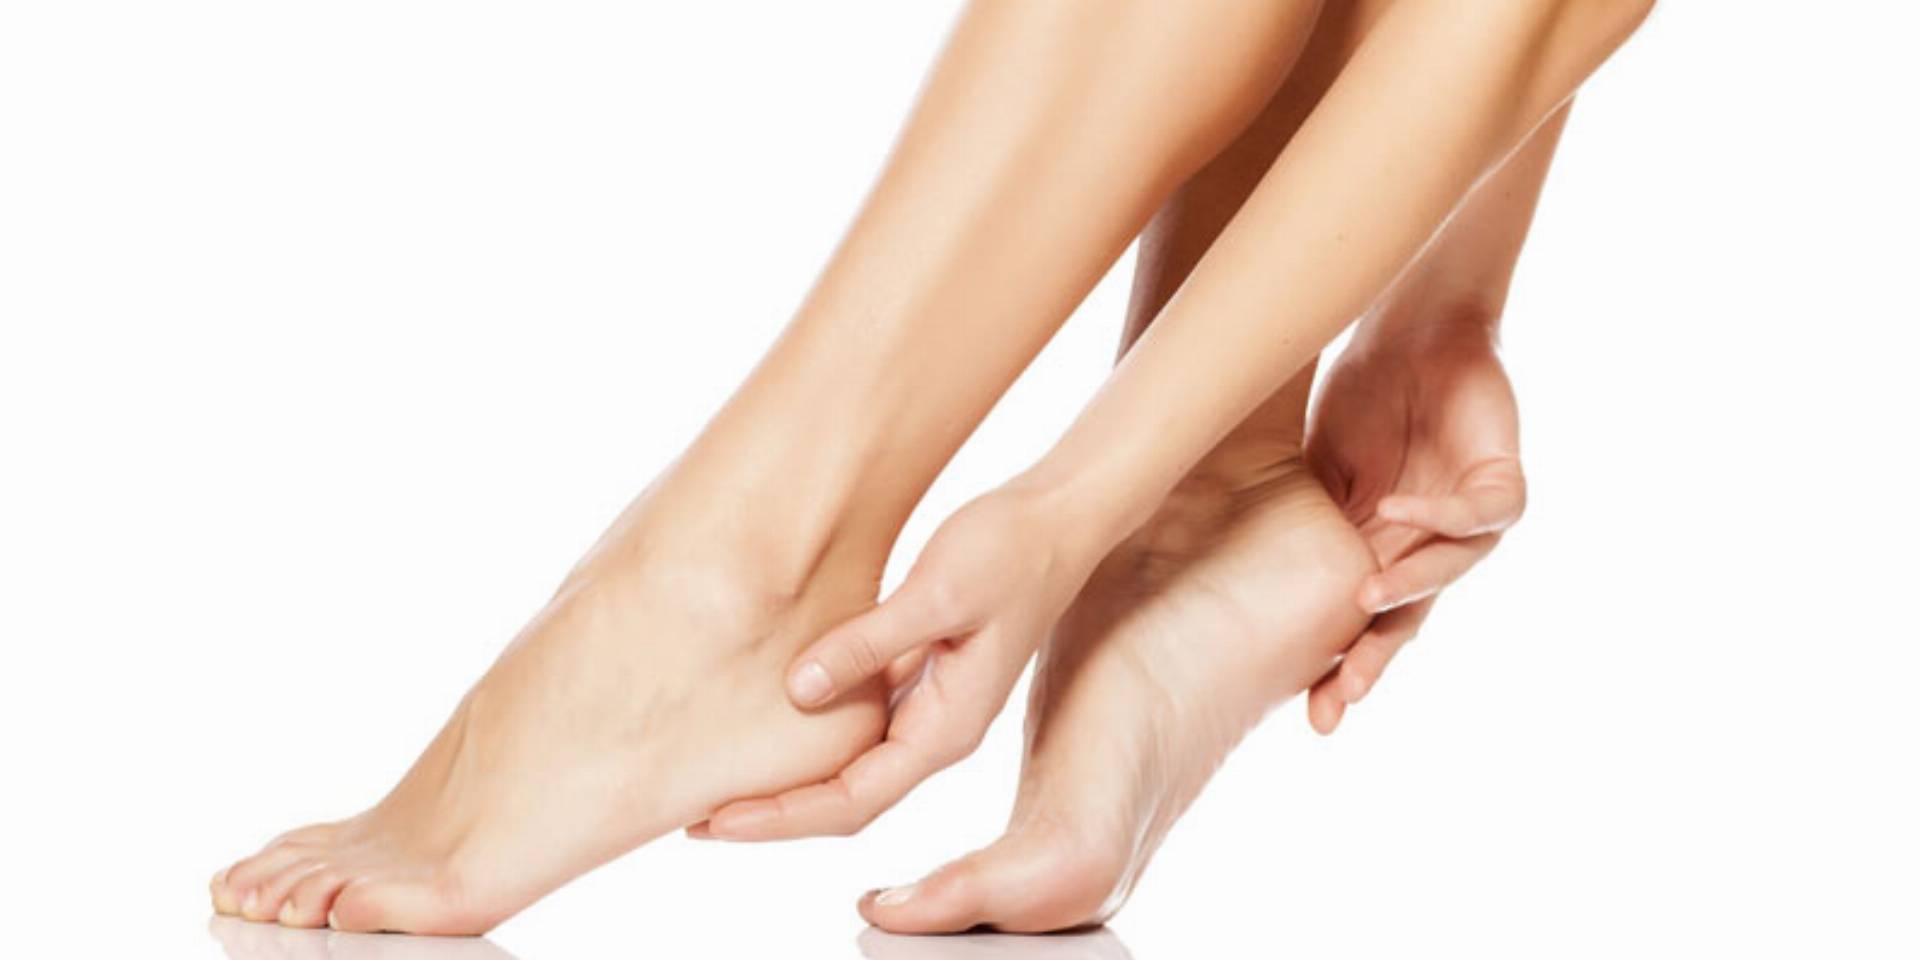 ekspert podolog podpowiada jak zadbac o paznokcie u nog i stopy po zimie kobietamag pl szary lakier do paznokci red and black christmas nails